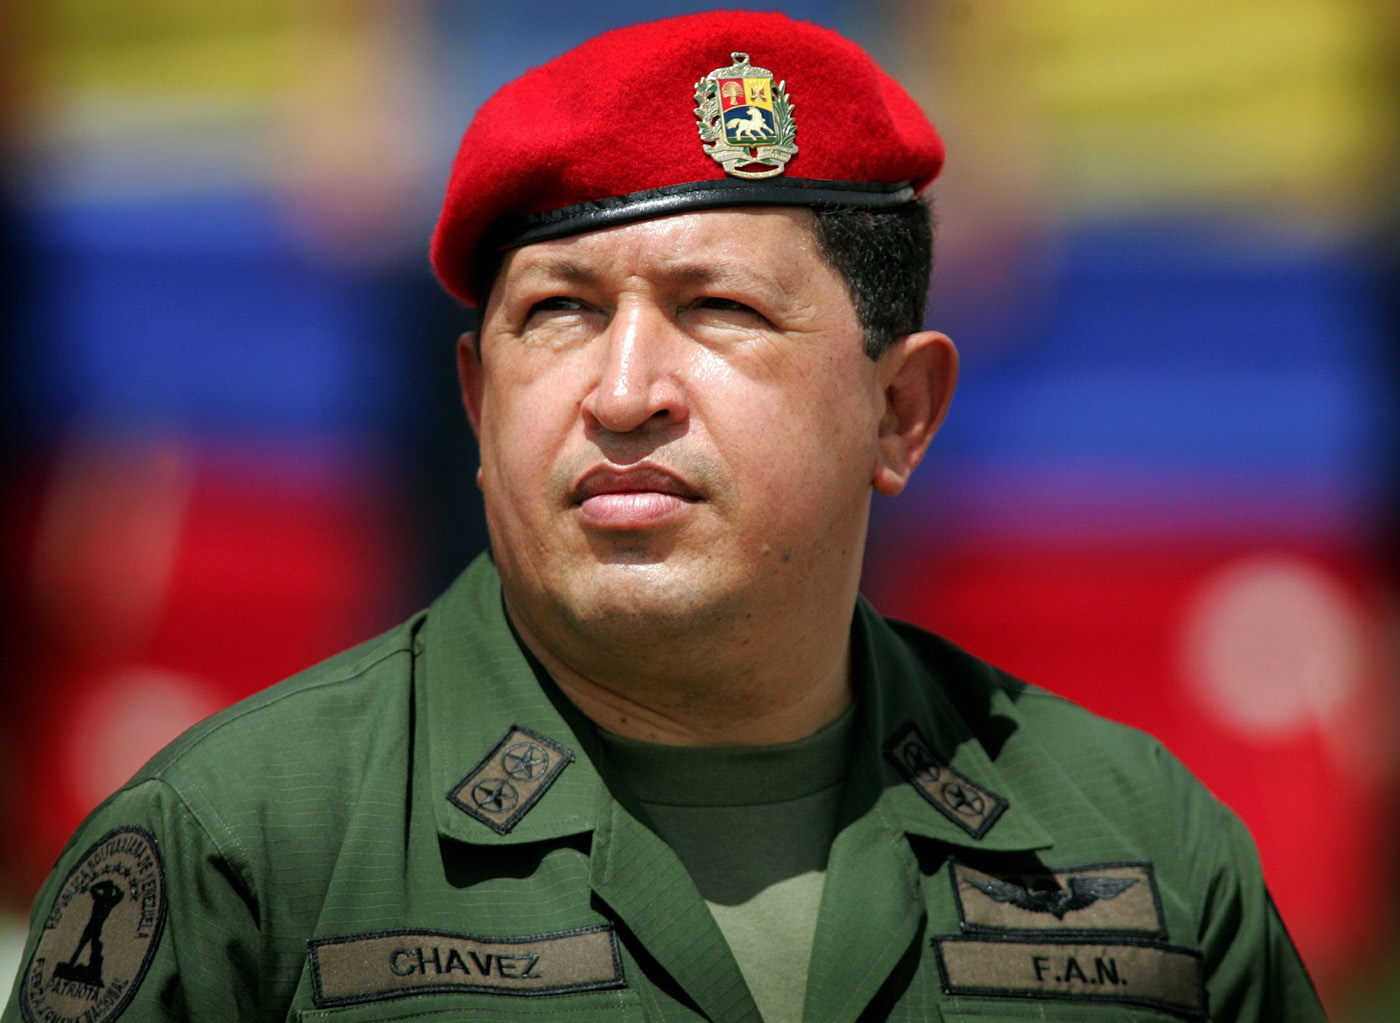 اشتباه نگیرید این عکس،عکس هوگو چاوز نیست!